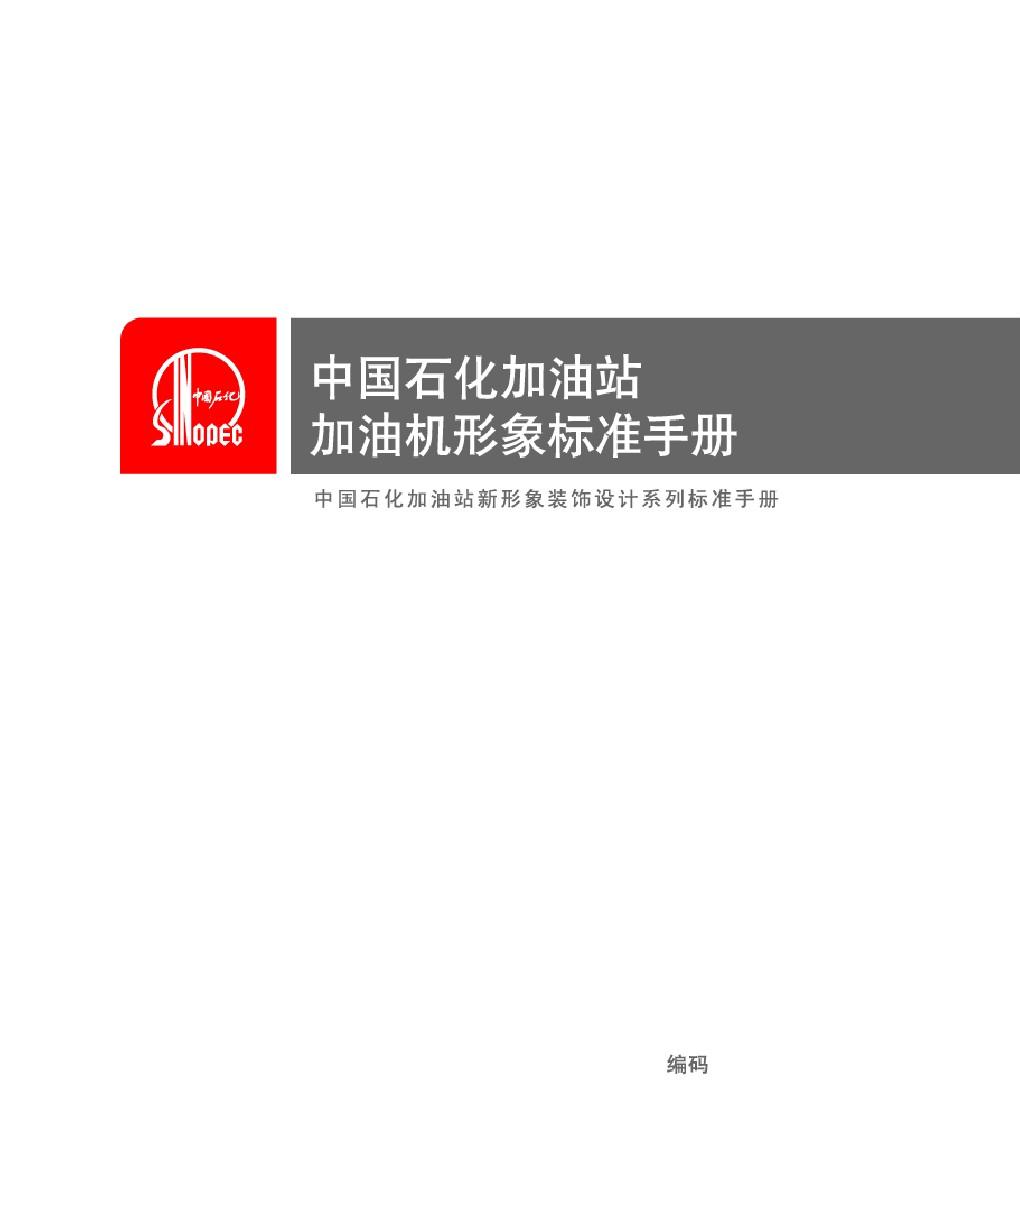 中国石化加油站加油机形象标准手册